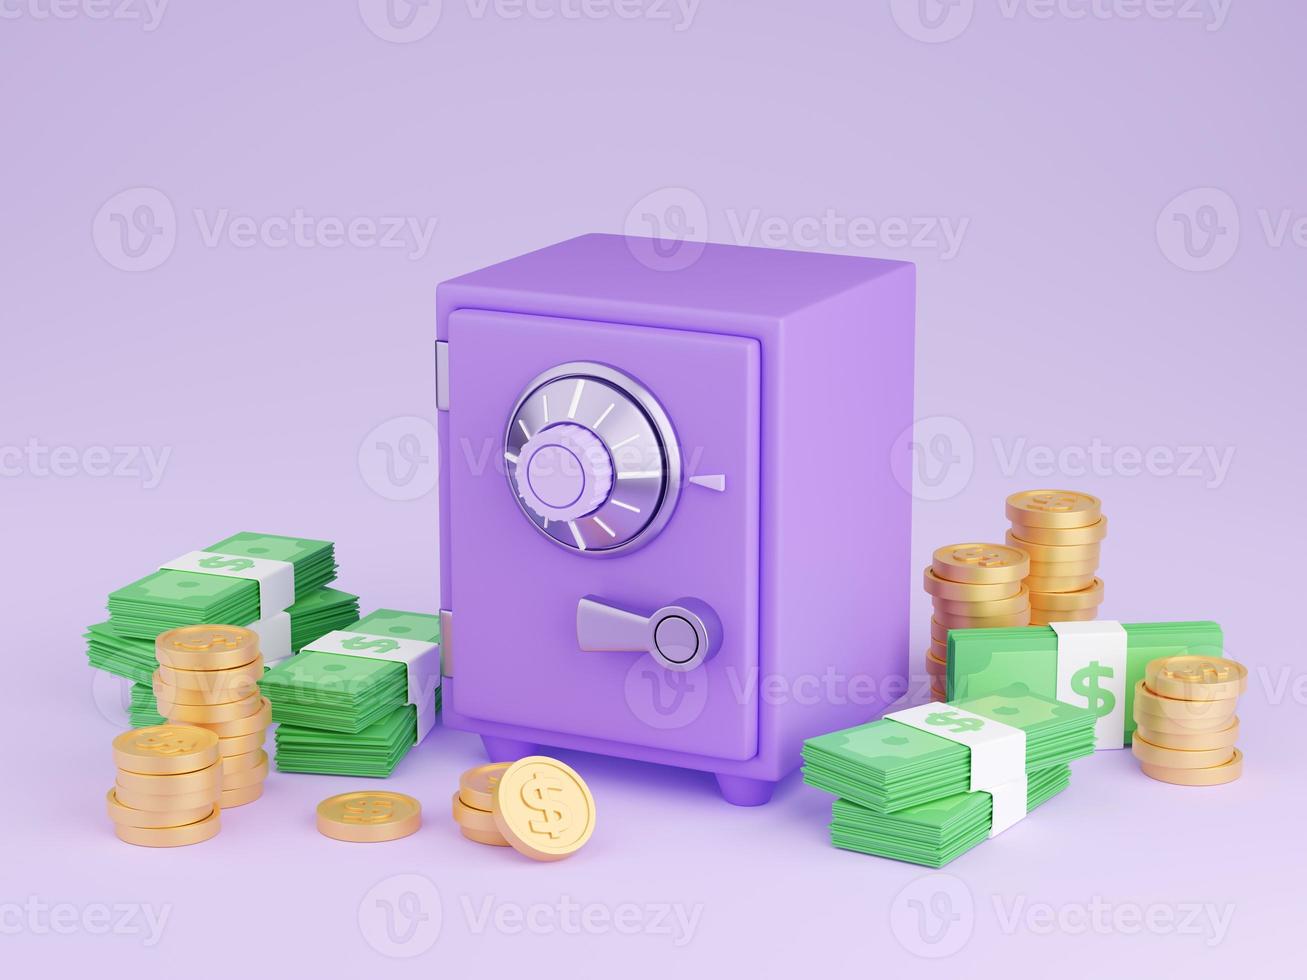 seguro caja con dinero 3d hacer - ilustración de cerrado púrpura caja fuerte rodeado por pila de oro monedas y papel dinero en efectivo. foto